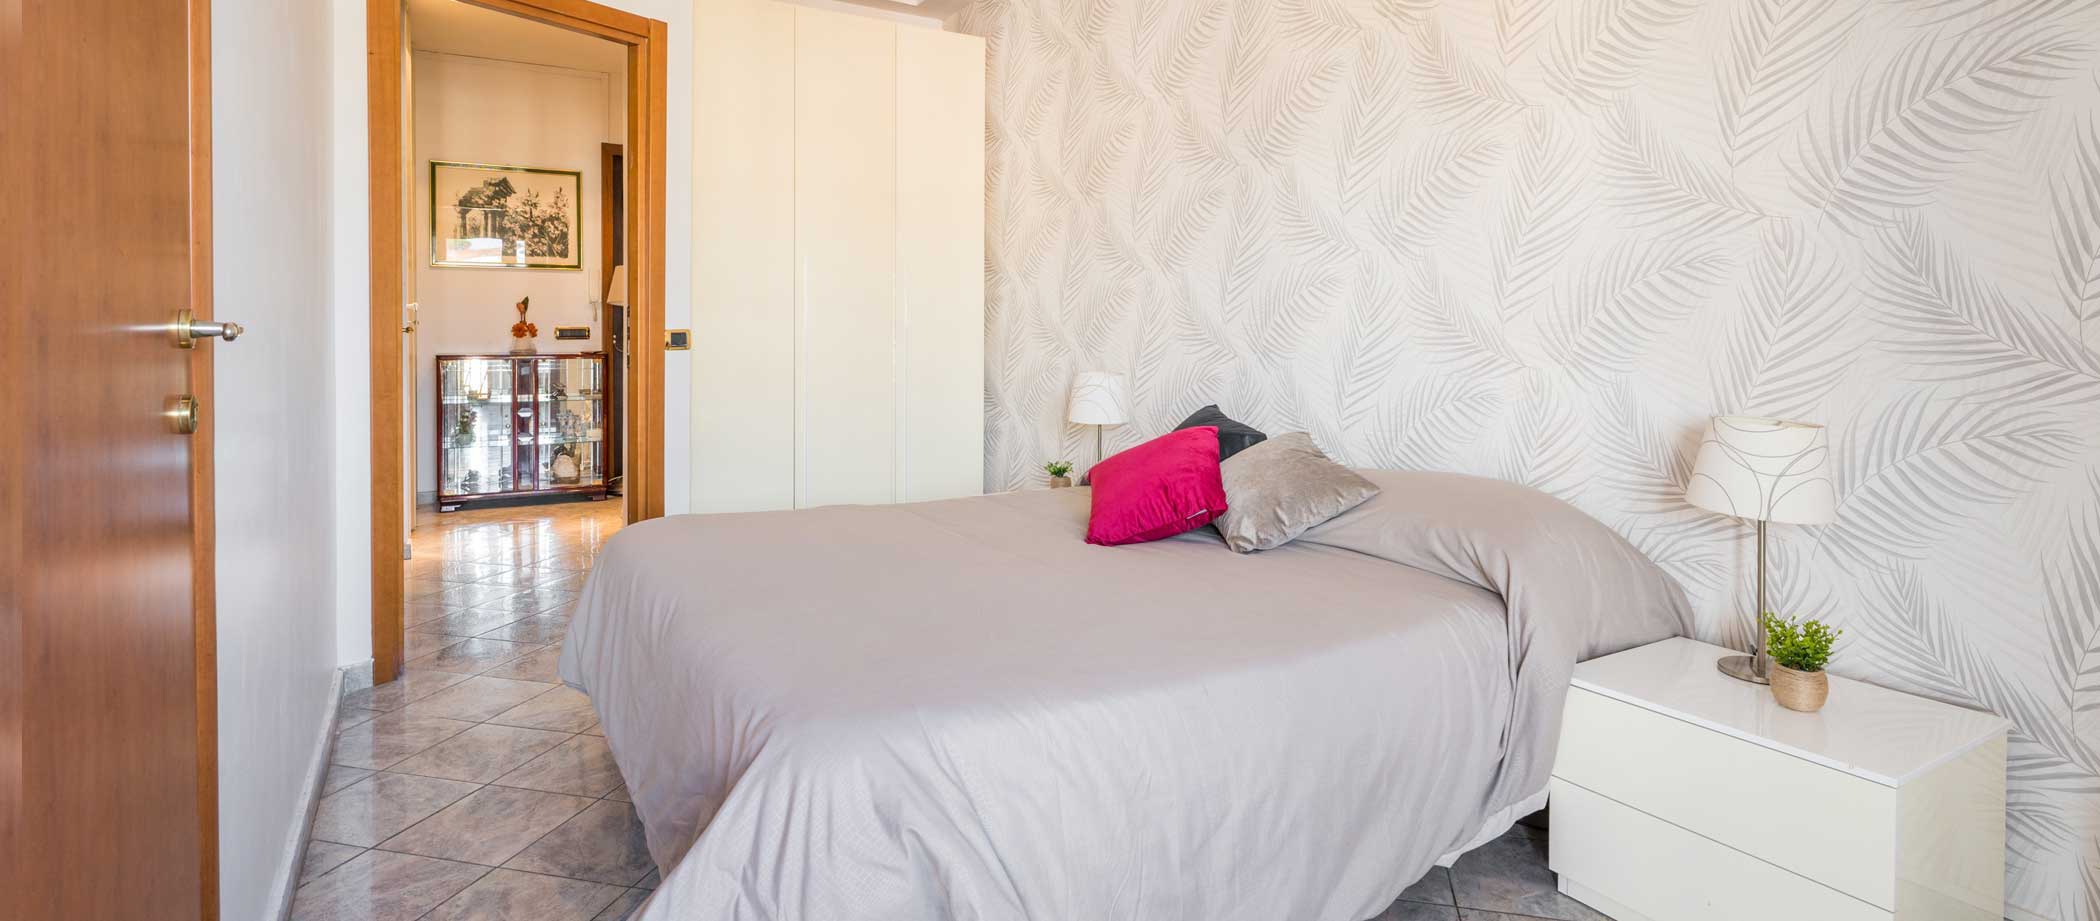 Bed & breakfast camere dove dormire vicino al Palalottomatica a Roma con ogni comfort. B&B Portuense camera da letto con bagno interno zona fiera